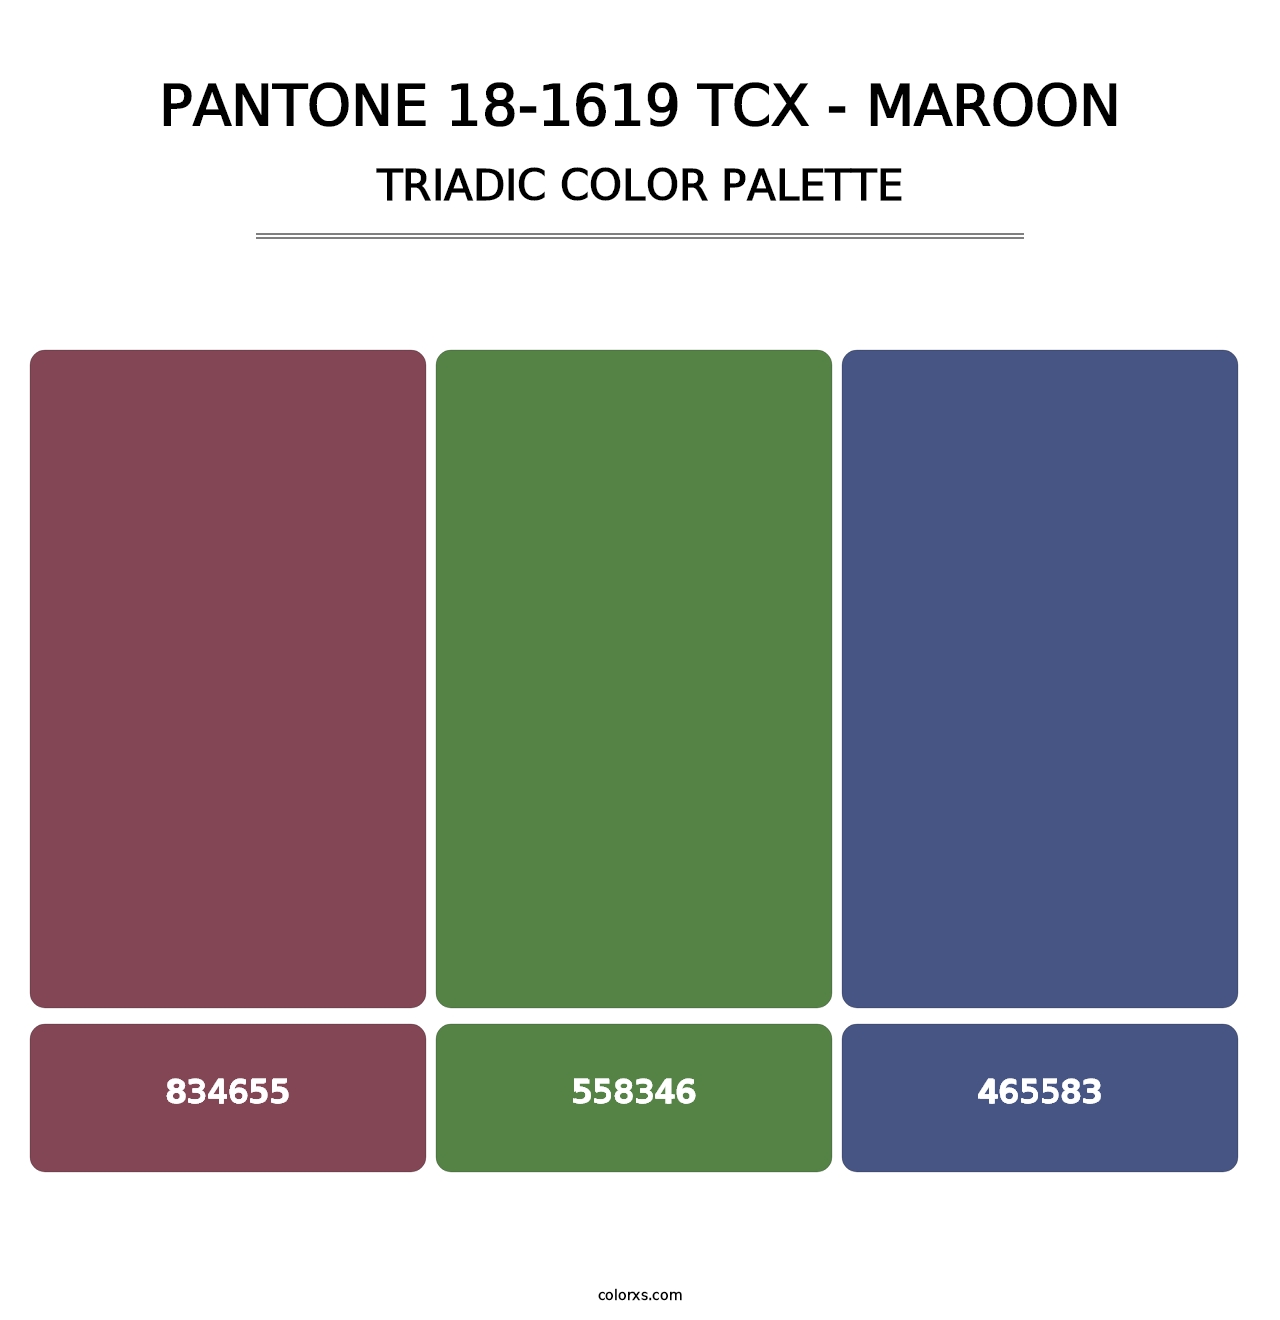 PANTONE 18-1619 TCX - Maroon - Triadic Color Palette